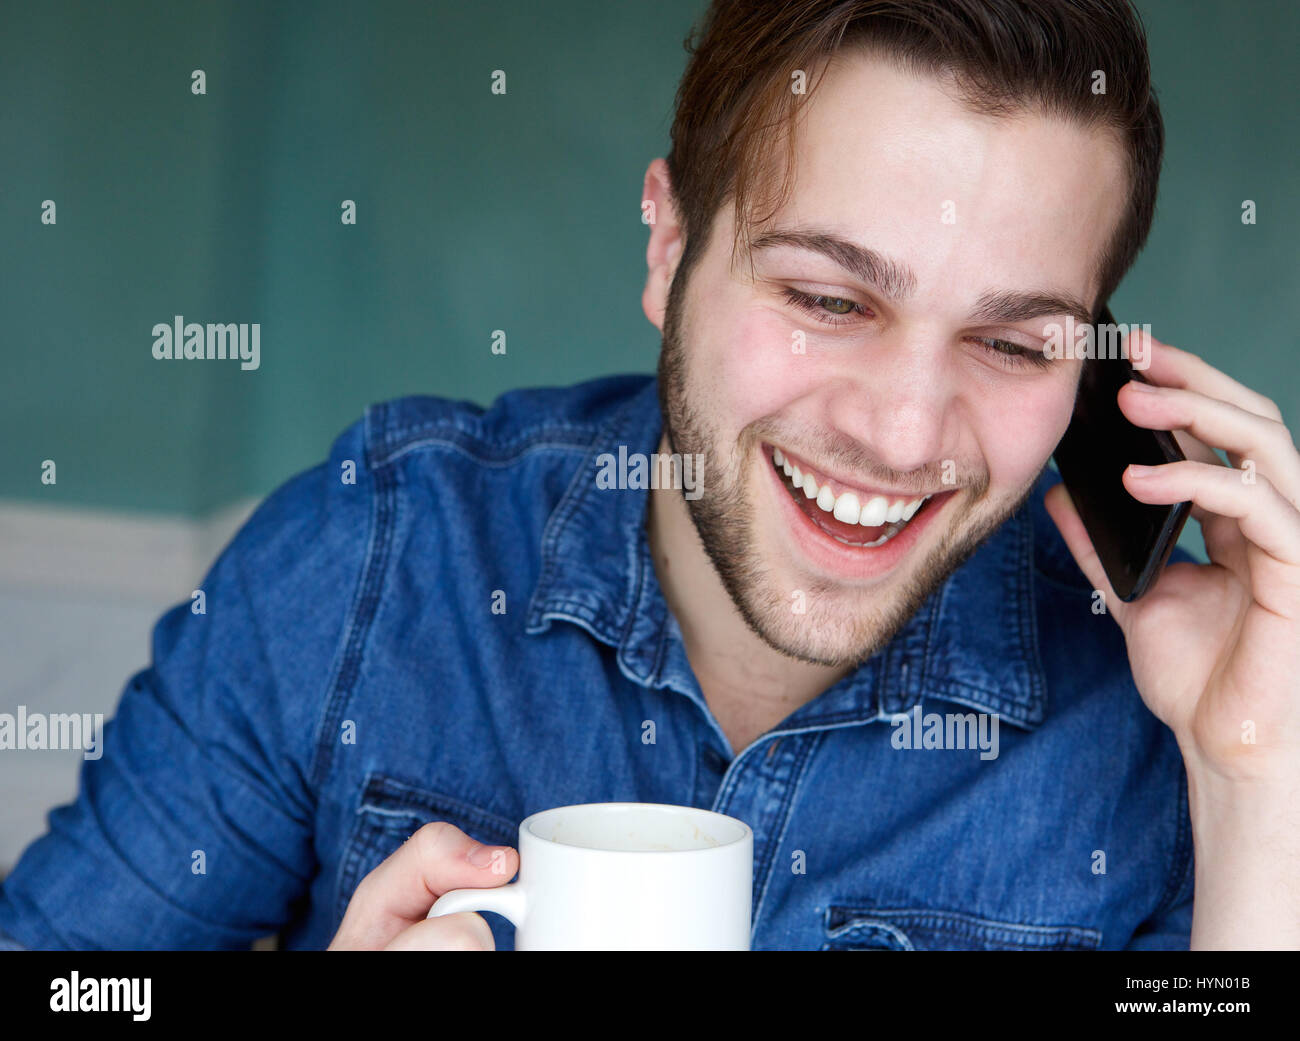 Porträt eines jungen Mannes, lächelnd mit Handy und Tasse Kaffee hautnah Stockfoto